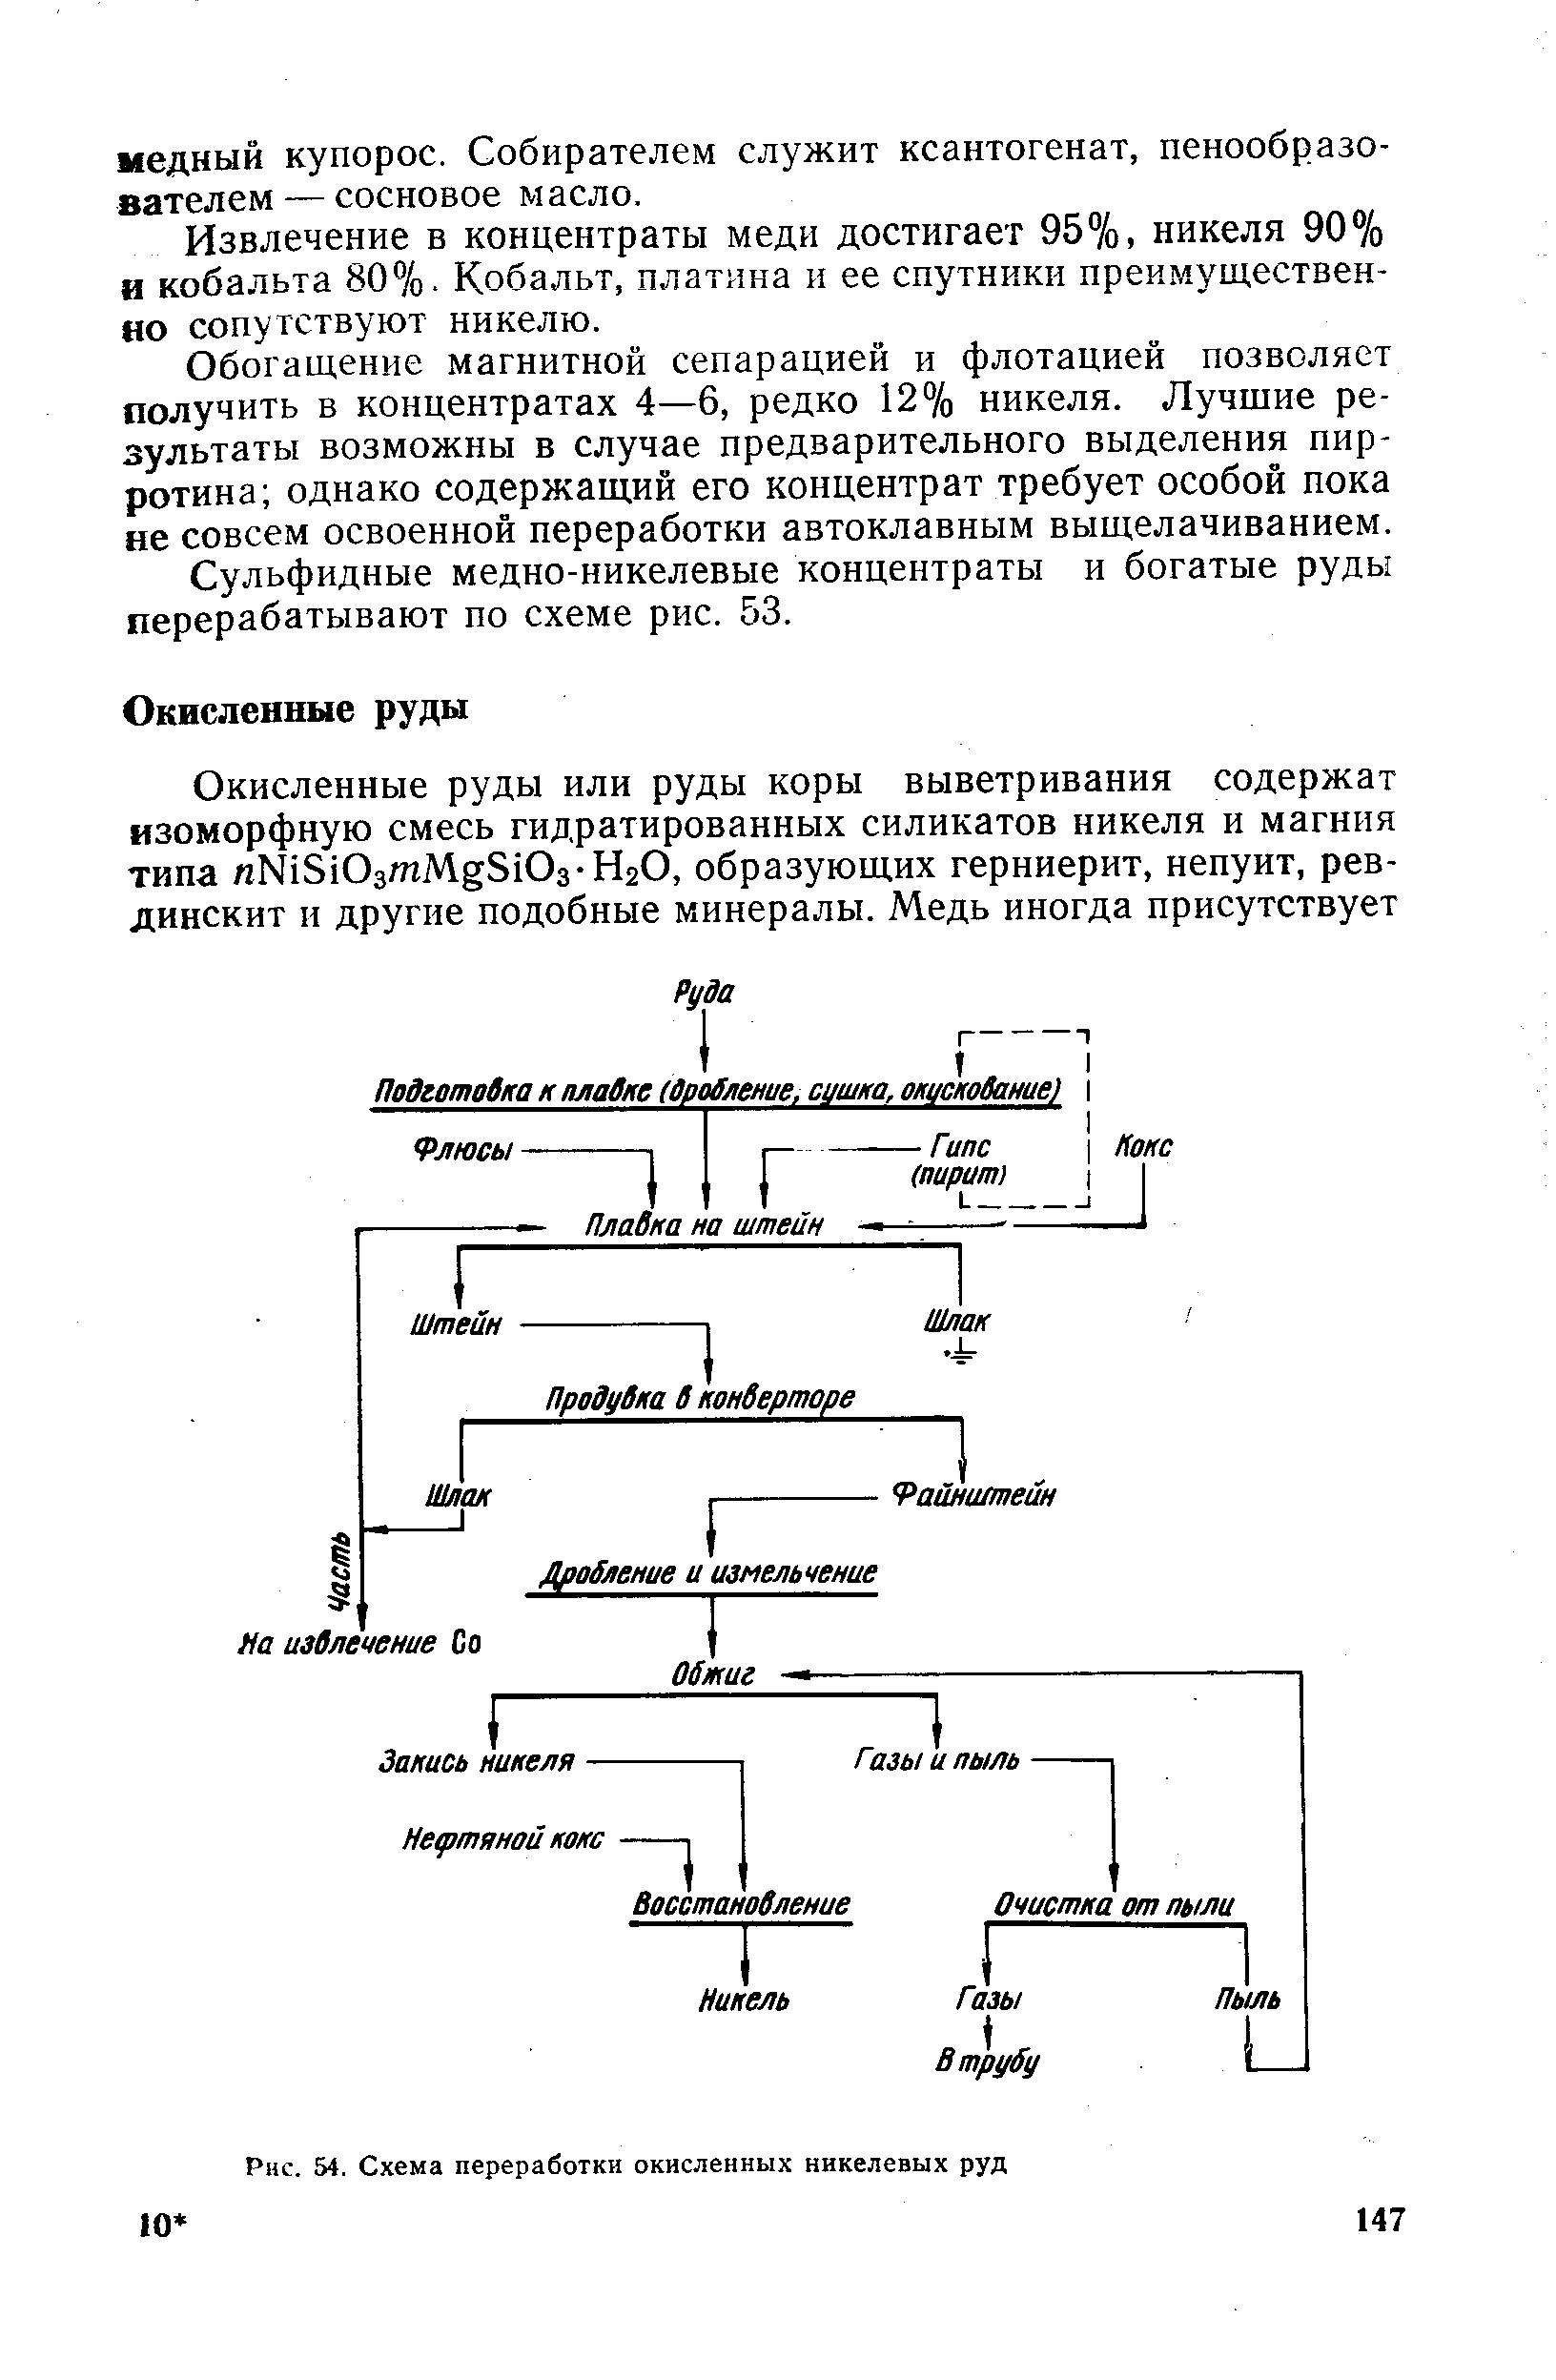 Рис. 54. Схема переработки окисленных никелевых руд
